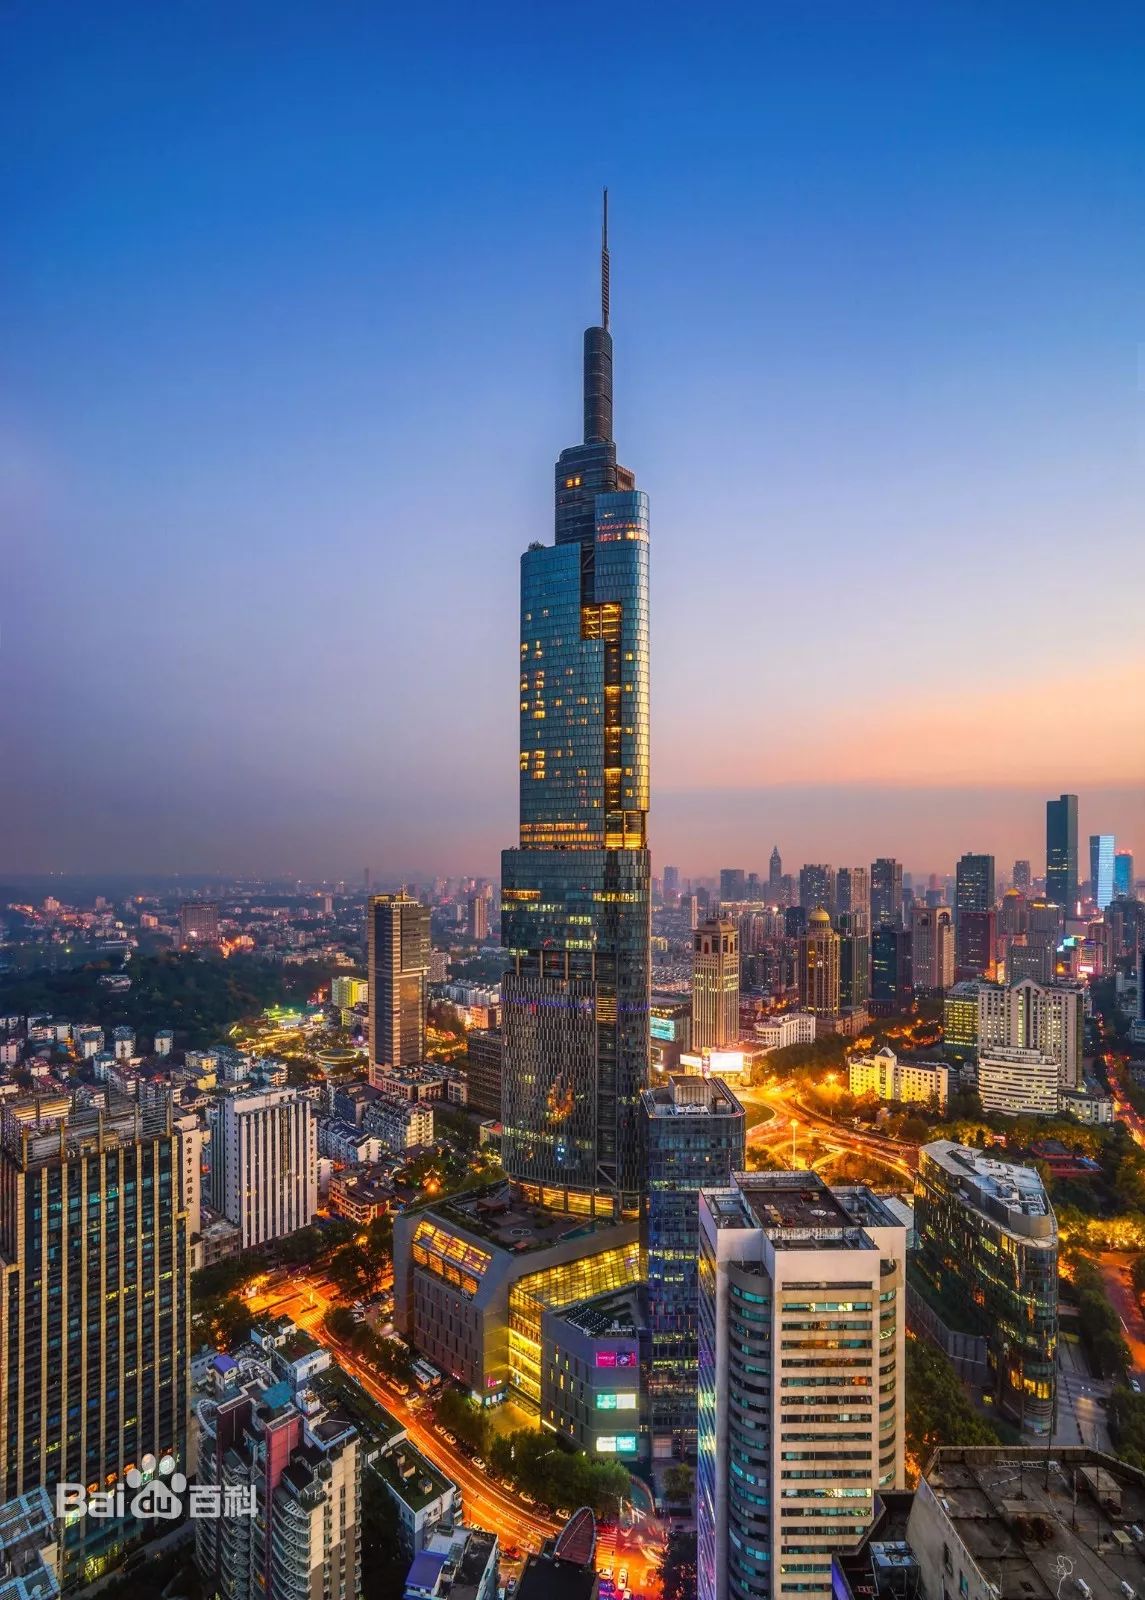 大厦的72层为观光层,可以俯瞰南京城,眺望长江,紫金山,玄武湖等